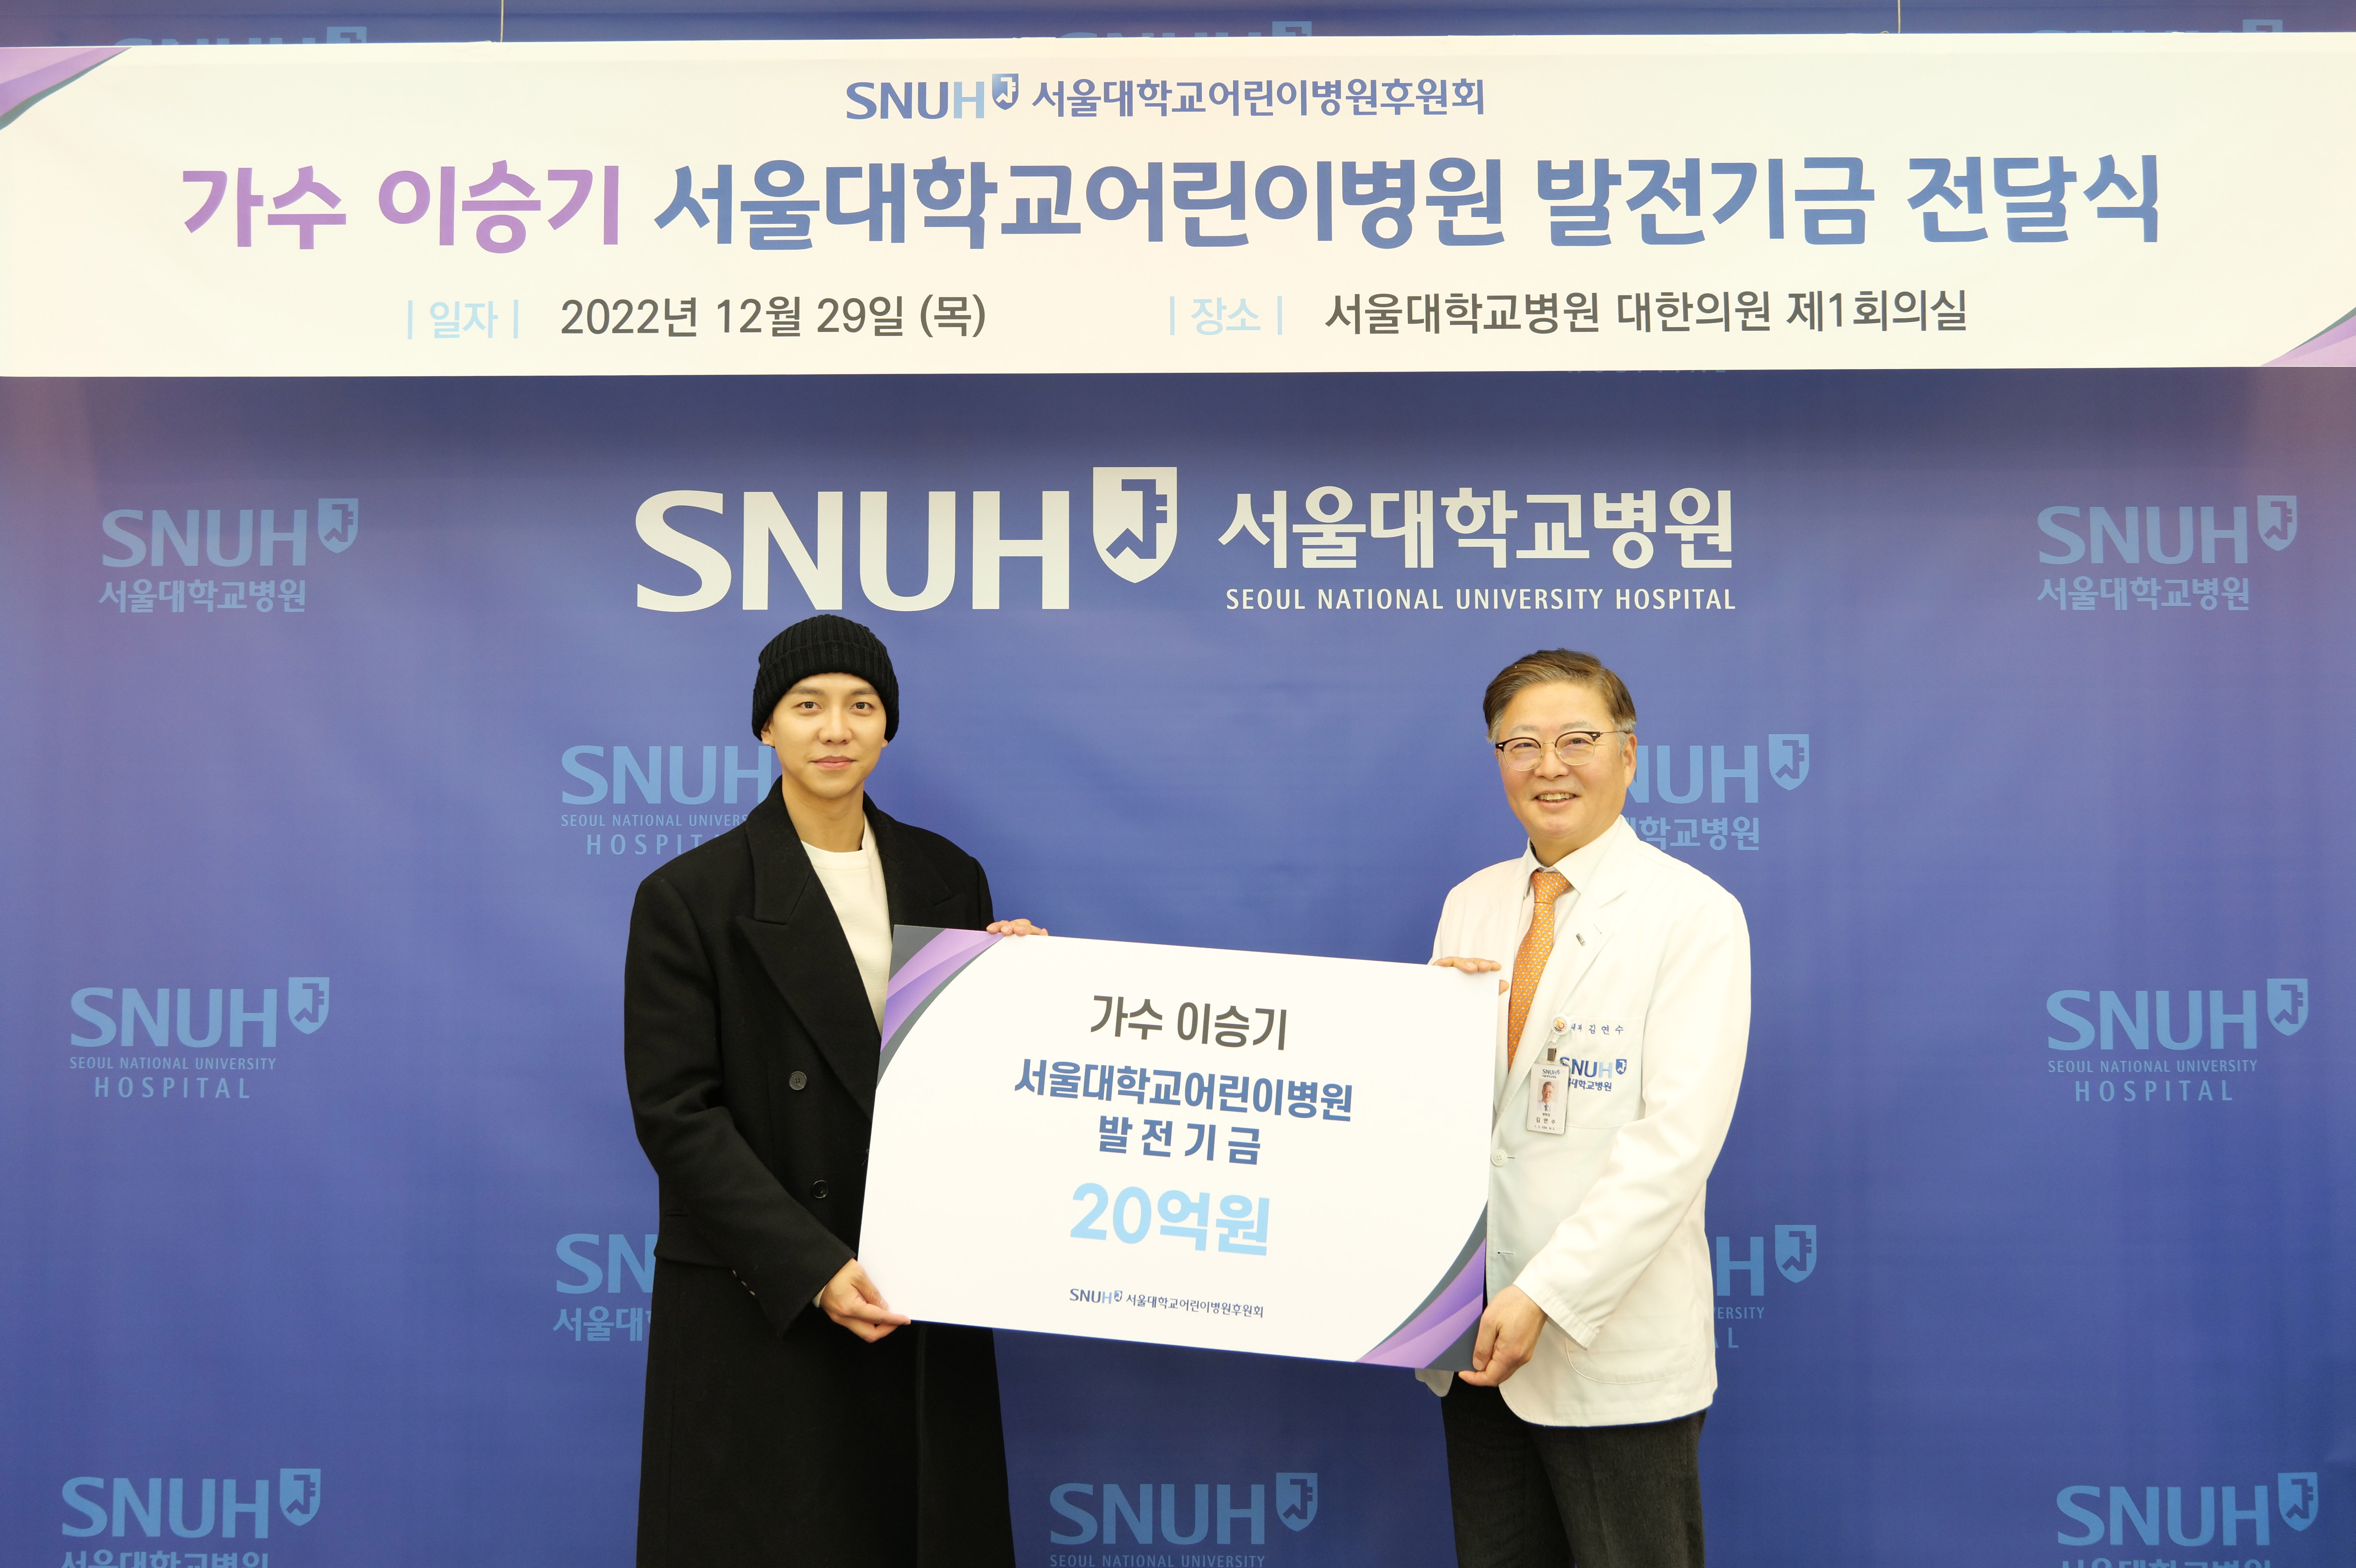 서울대어린이병원, 가수 이승기로부터 발전기금 20억원 전달받아